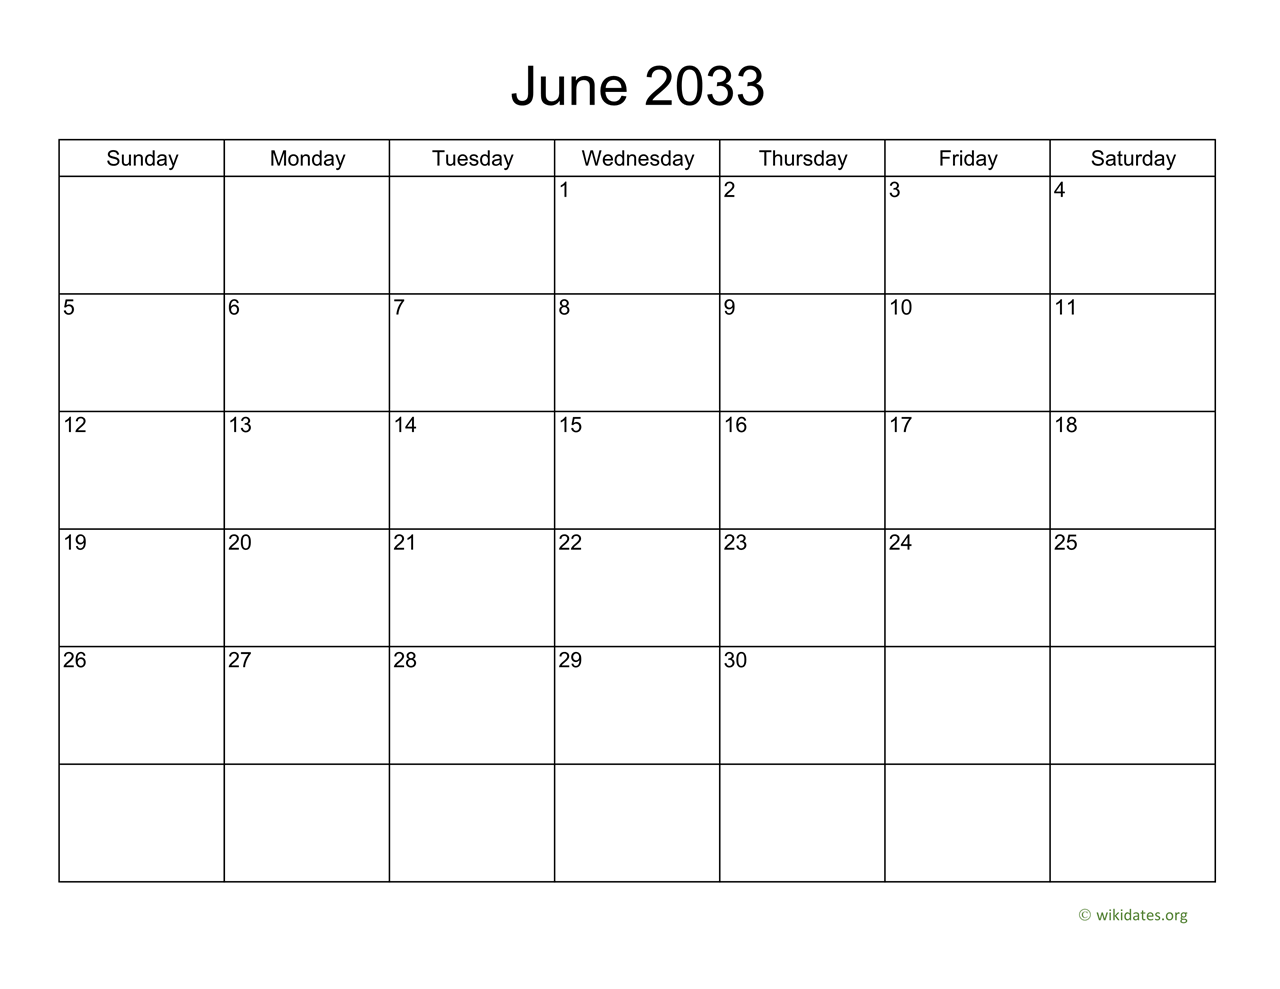 Basic Calendar For June 2033